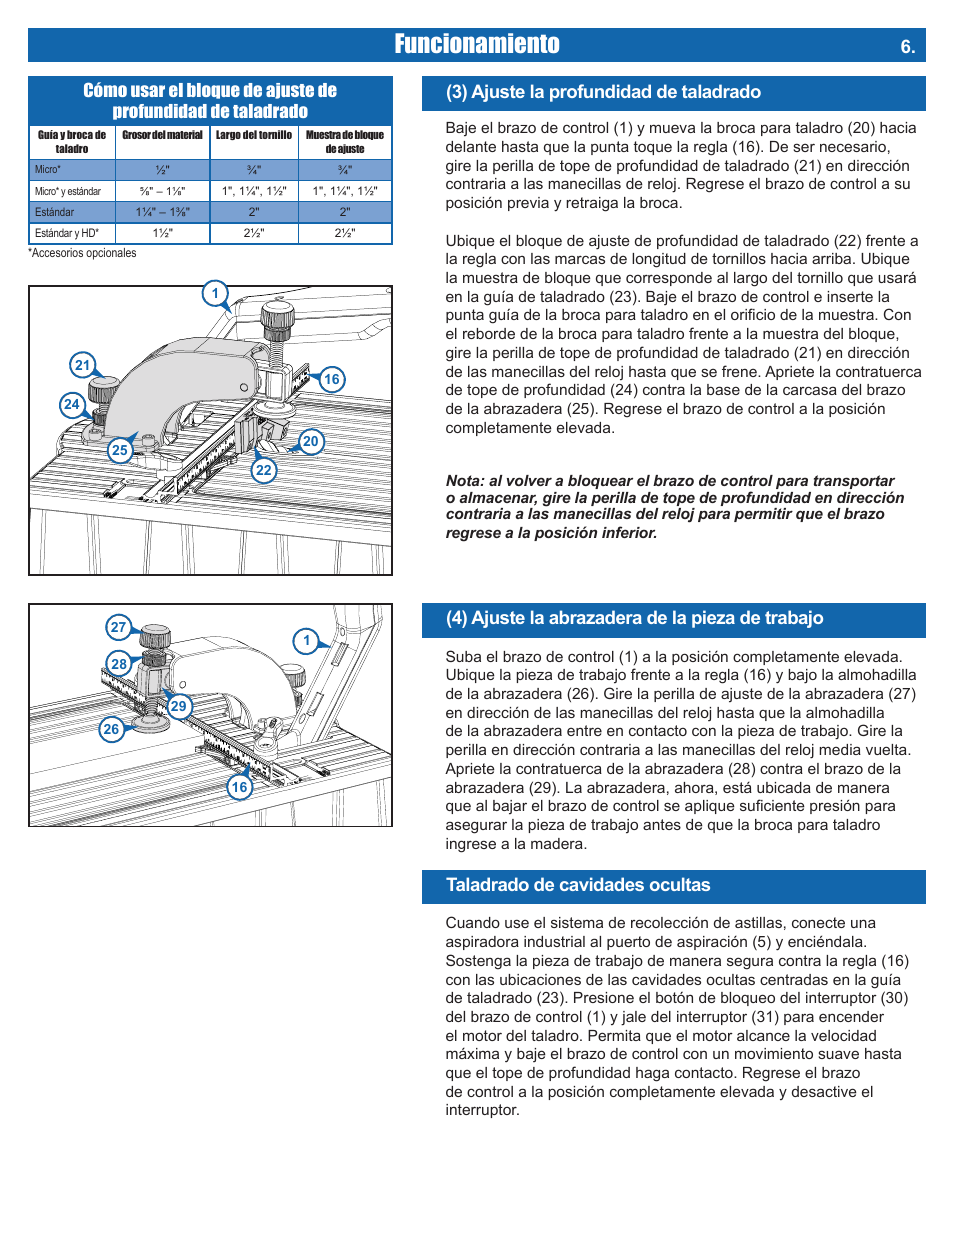 Funcionamiento, 3) ajuste la profundidad de taladrado, Taladrado de cavidades ocultas | 4) ajuste la abrazadera de la pieza de trabajo | Kreg DB210 Foreman Pocket-Hole Machine User Manual | Page 37 / 44